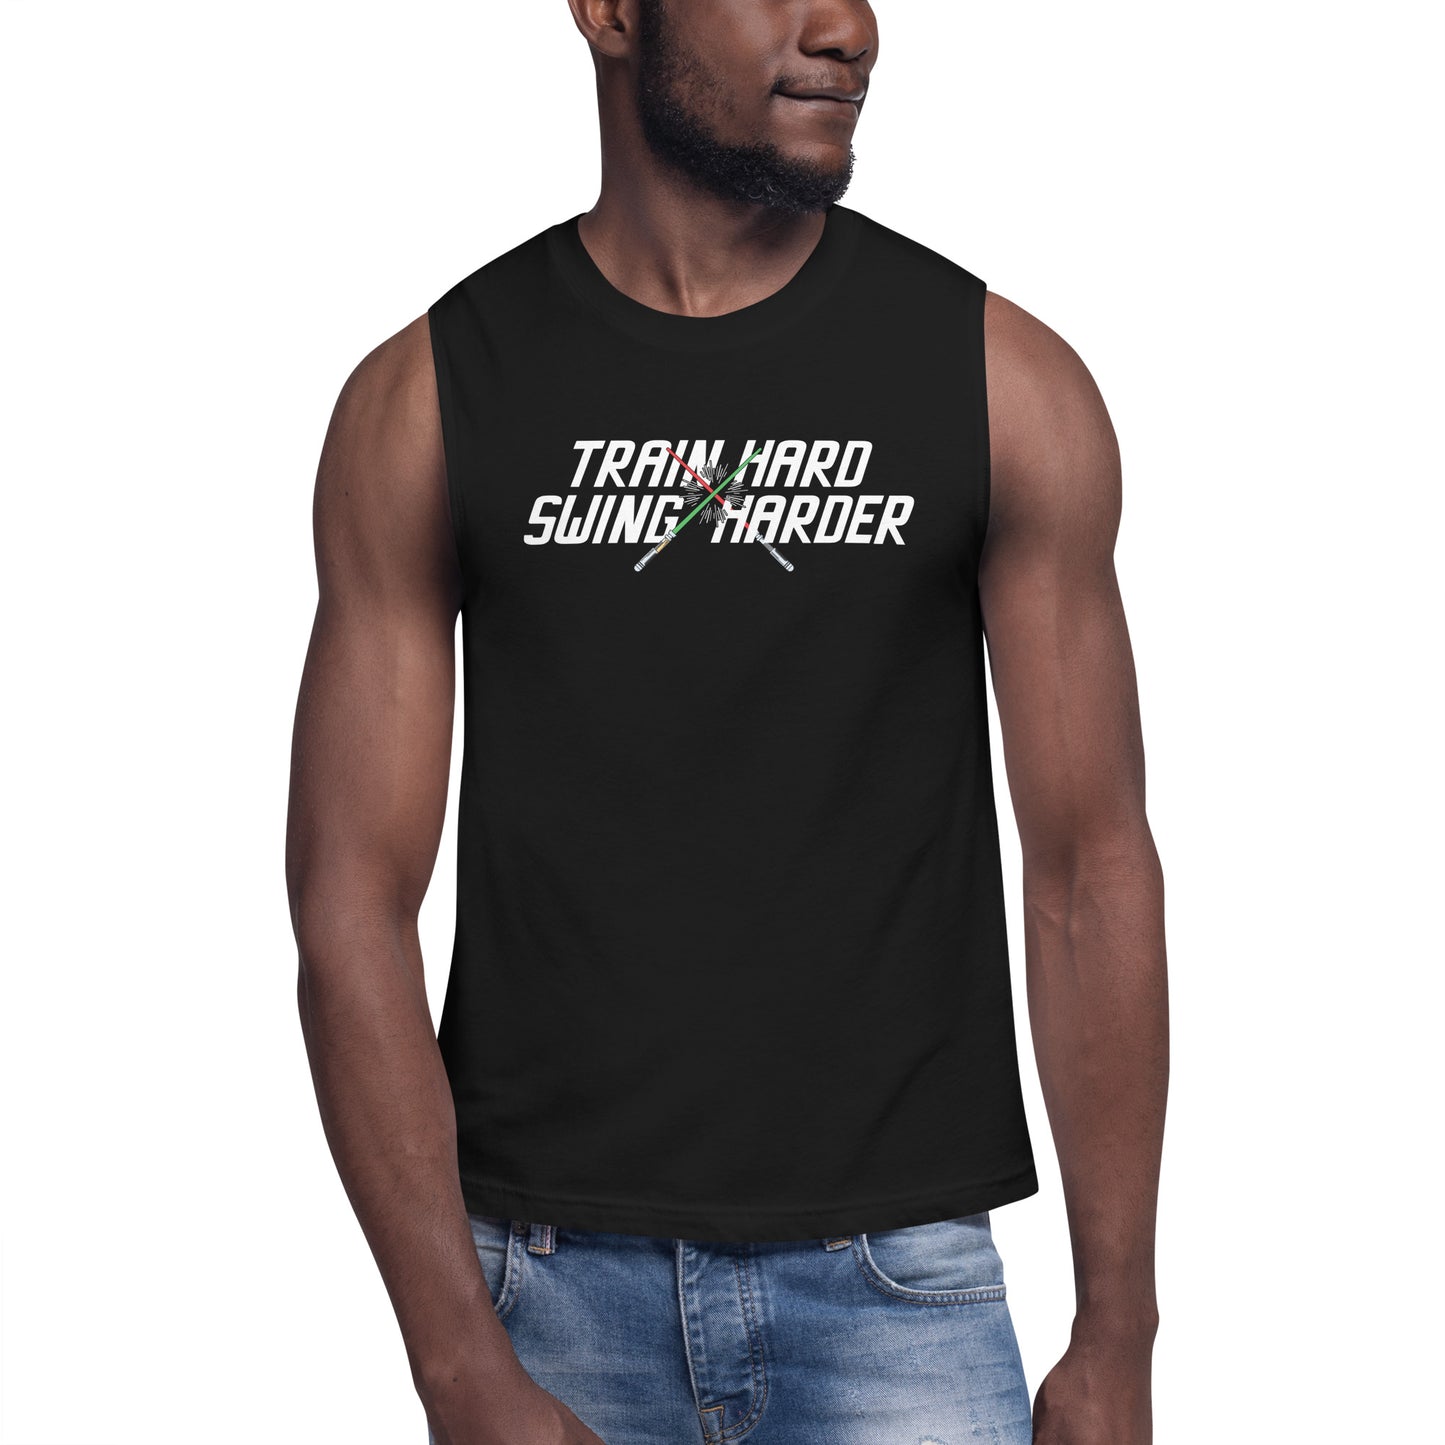 Train Hard Swing Harder Muscle Shirt